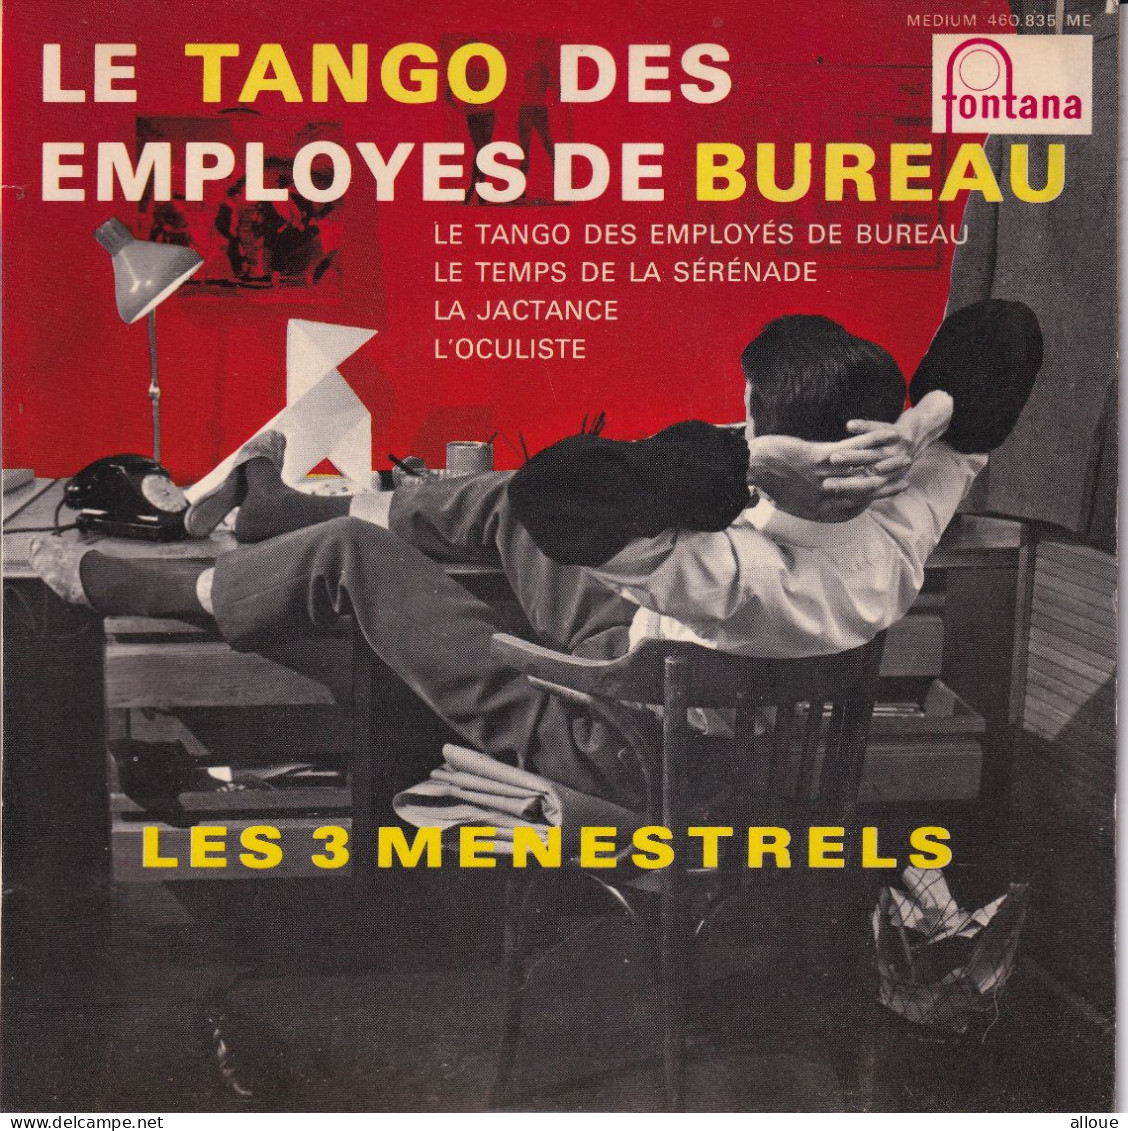 LES 3 MENESTRELS - FR EP - LE TANGO DES EMPLOYES DE BUREAU + 3 - Autres - Musique Française